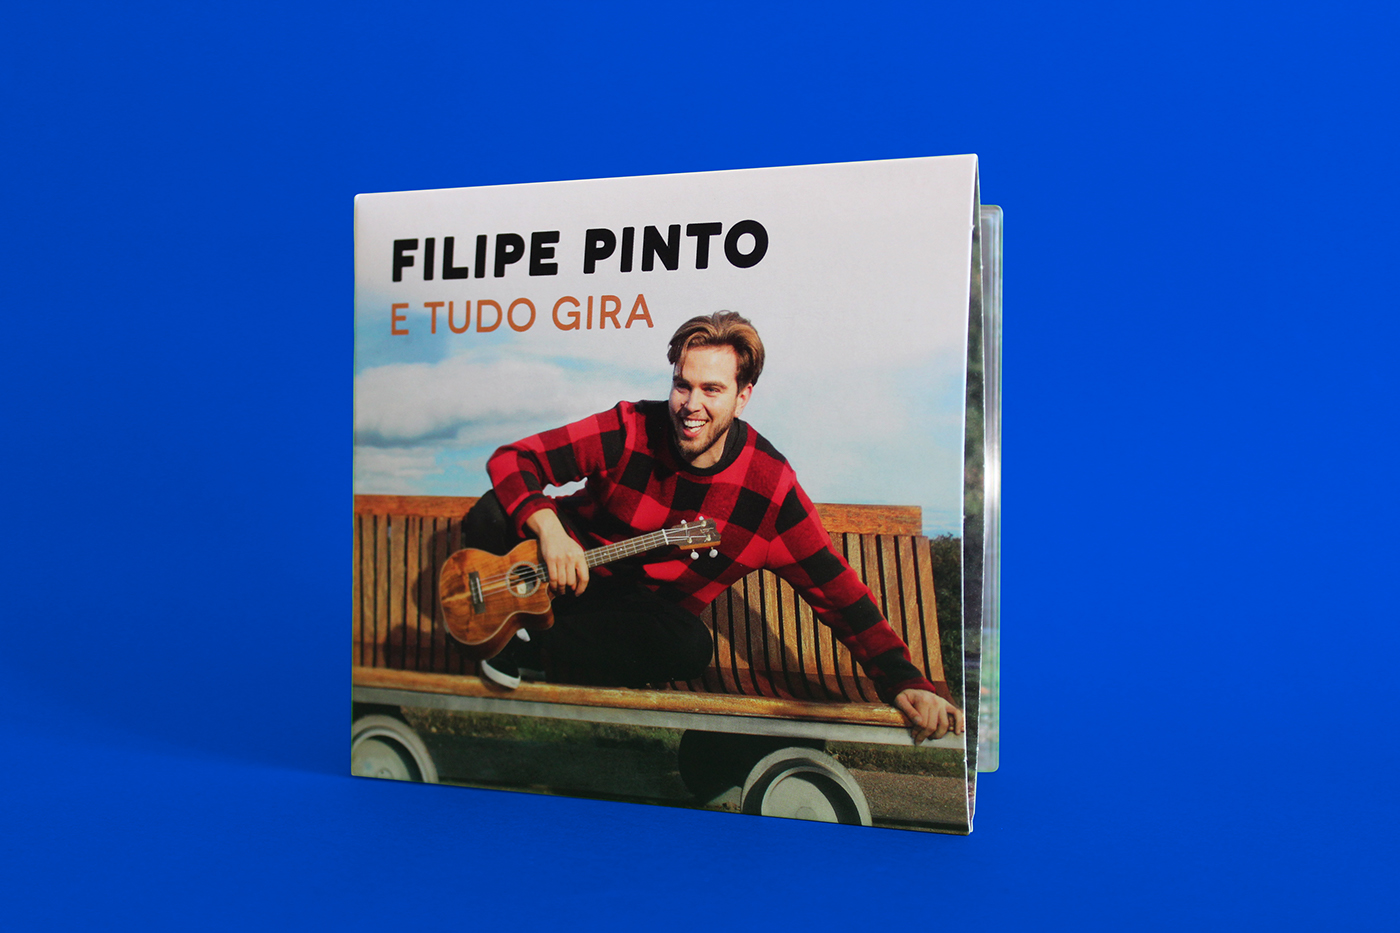 Album cover design Filipe Pinto E Tudo Gira Ídolos digipack Up Studio Sony Music Entertainment idols